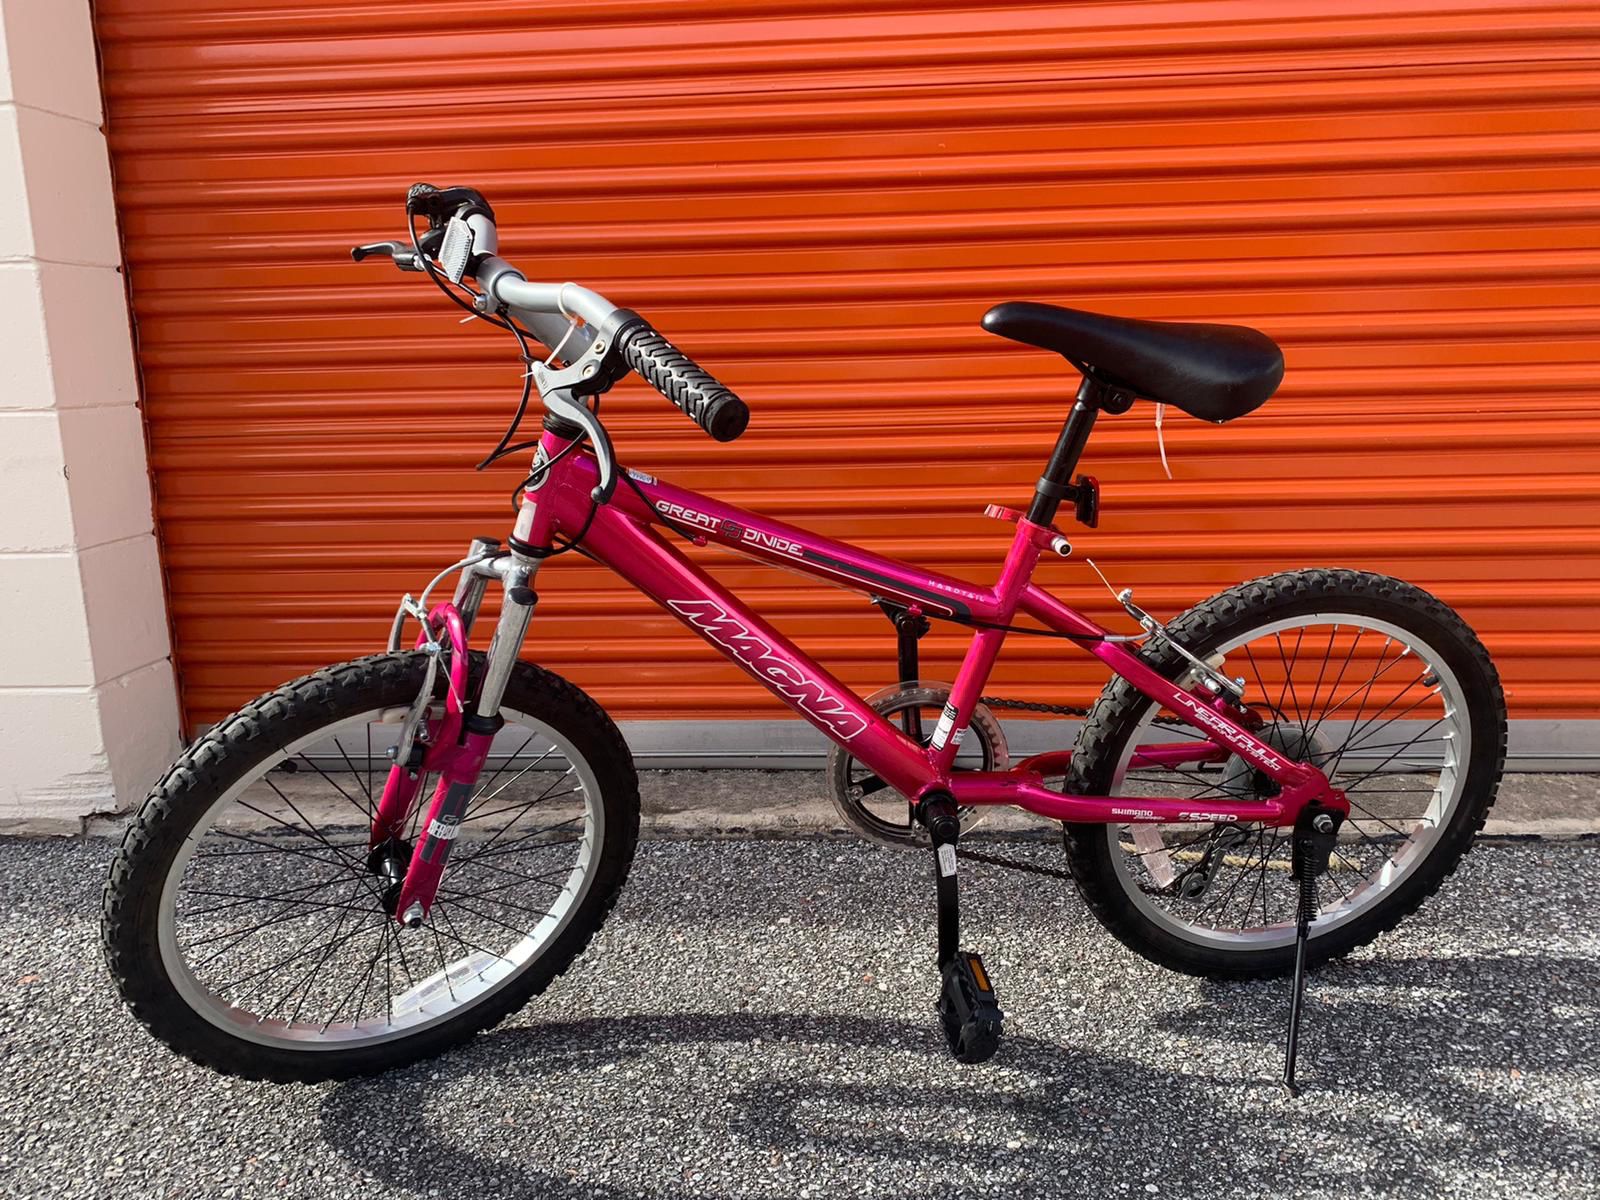 Bike for girls and helmet